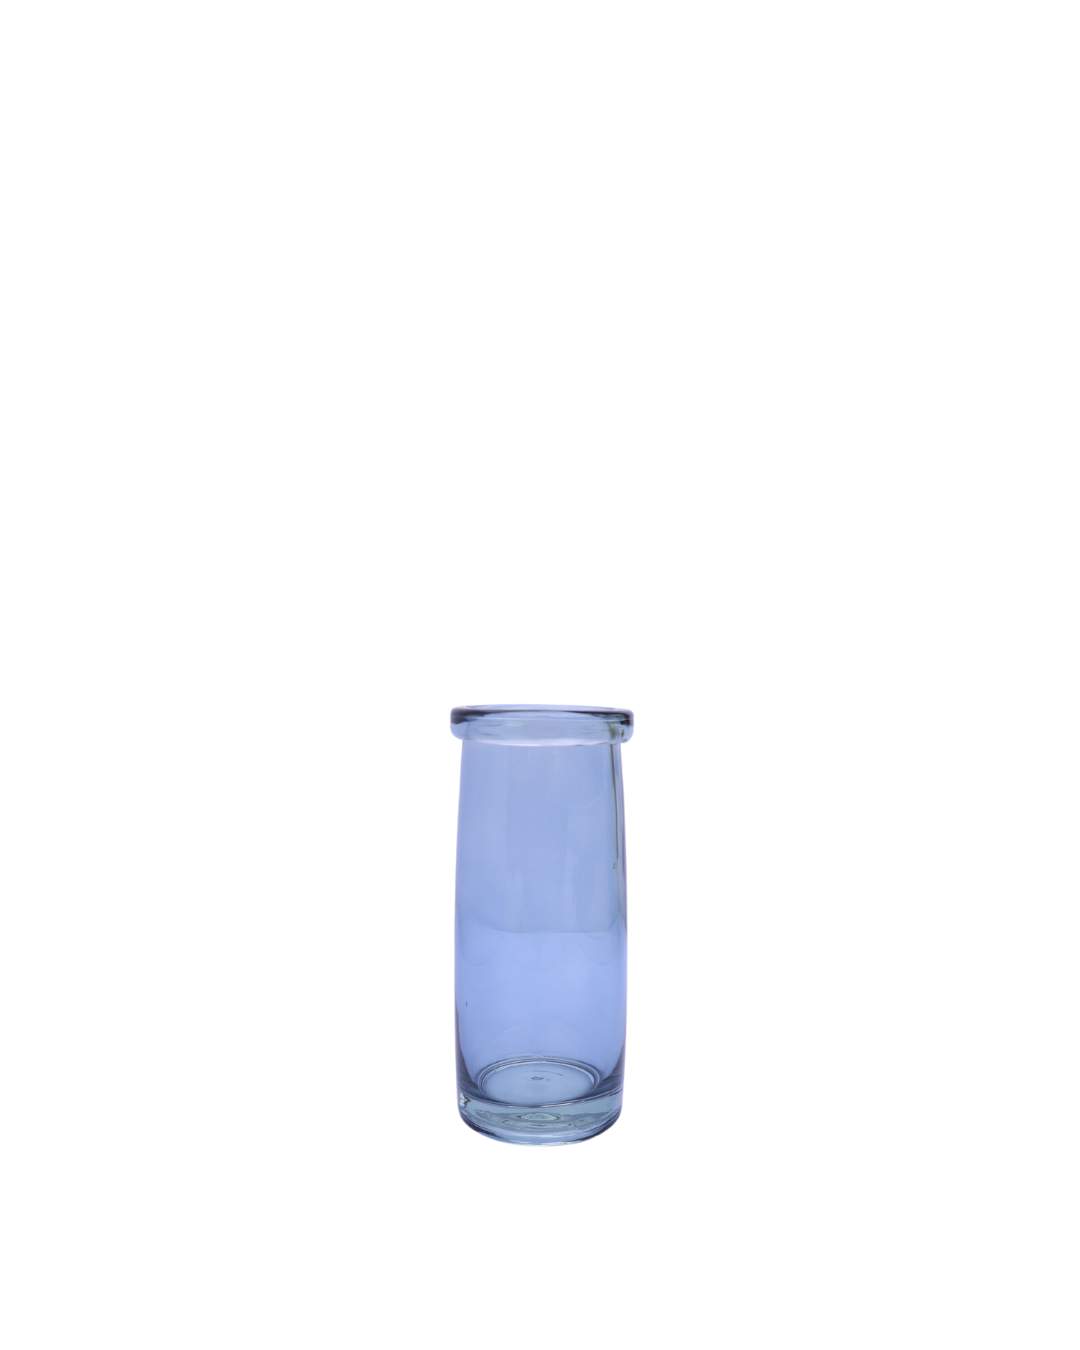 Tube Vase S - Blue